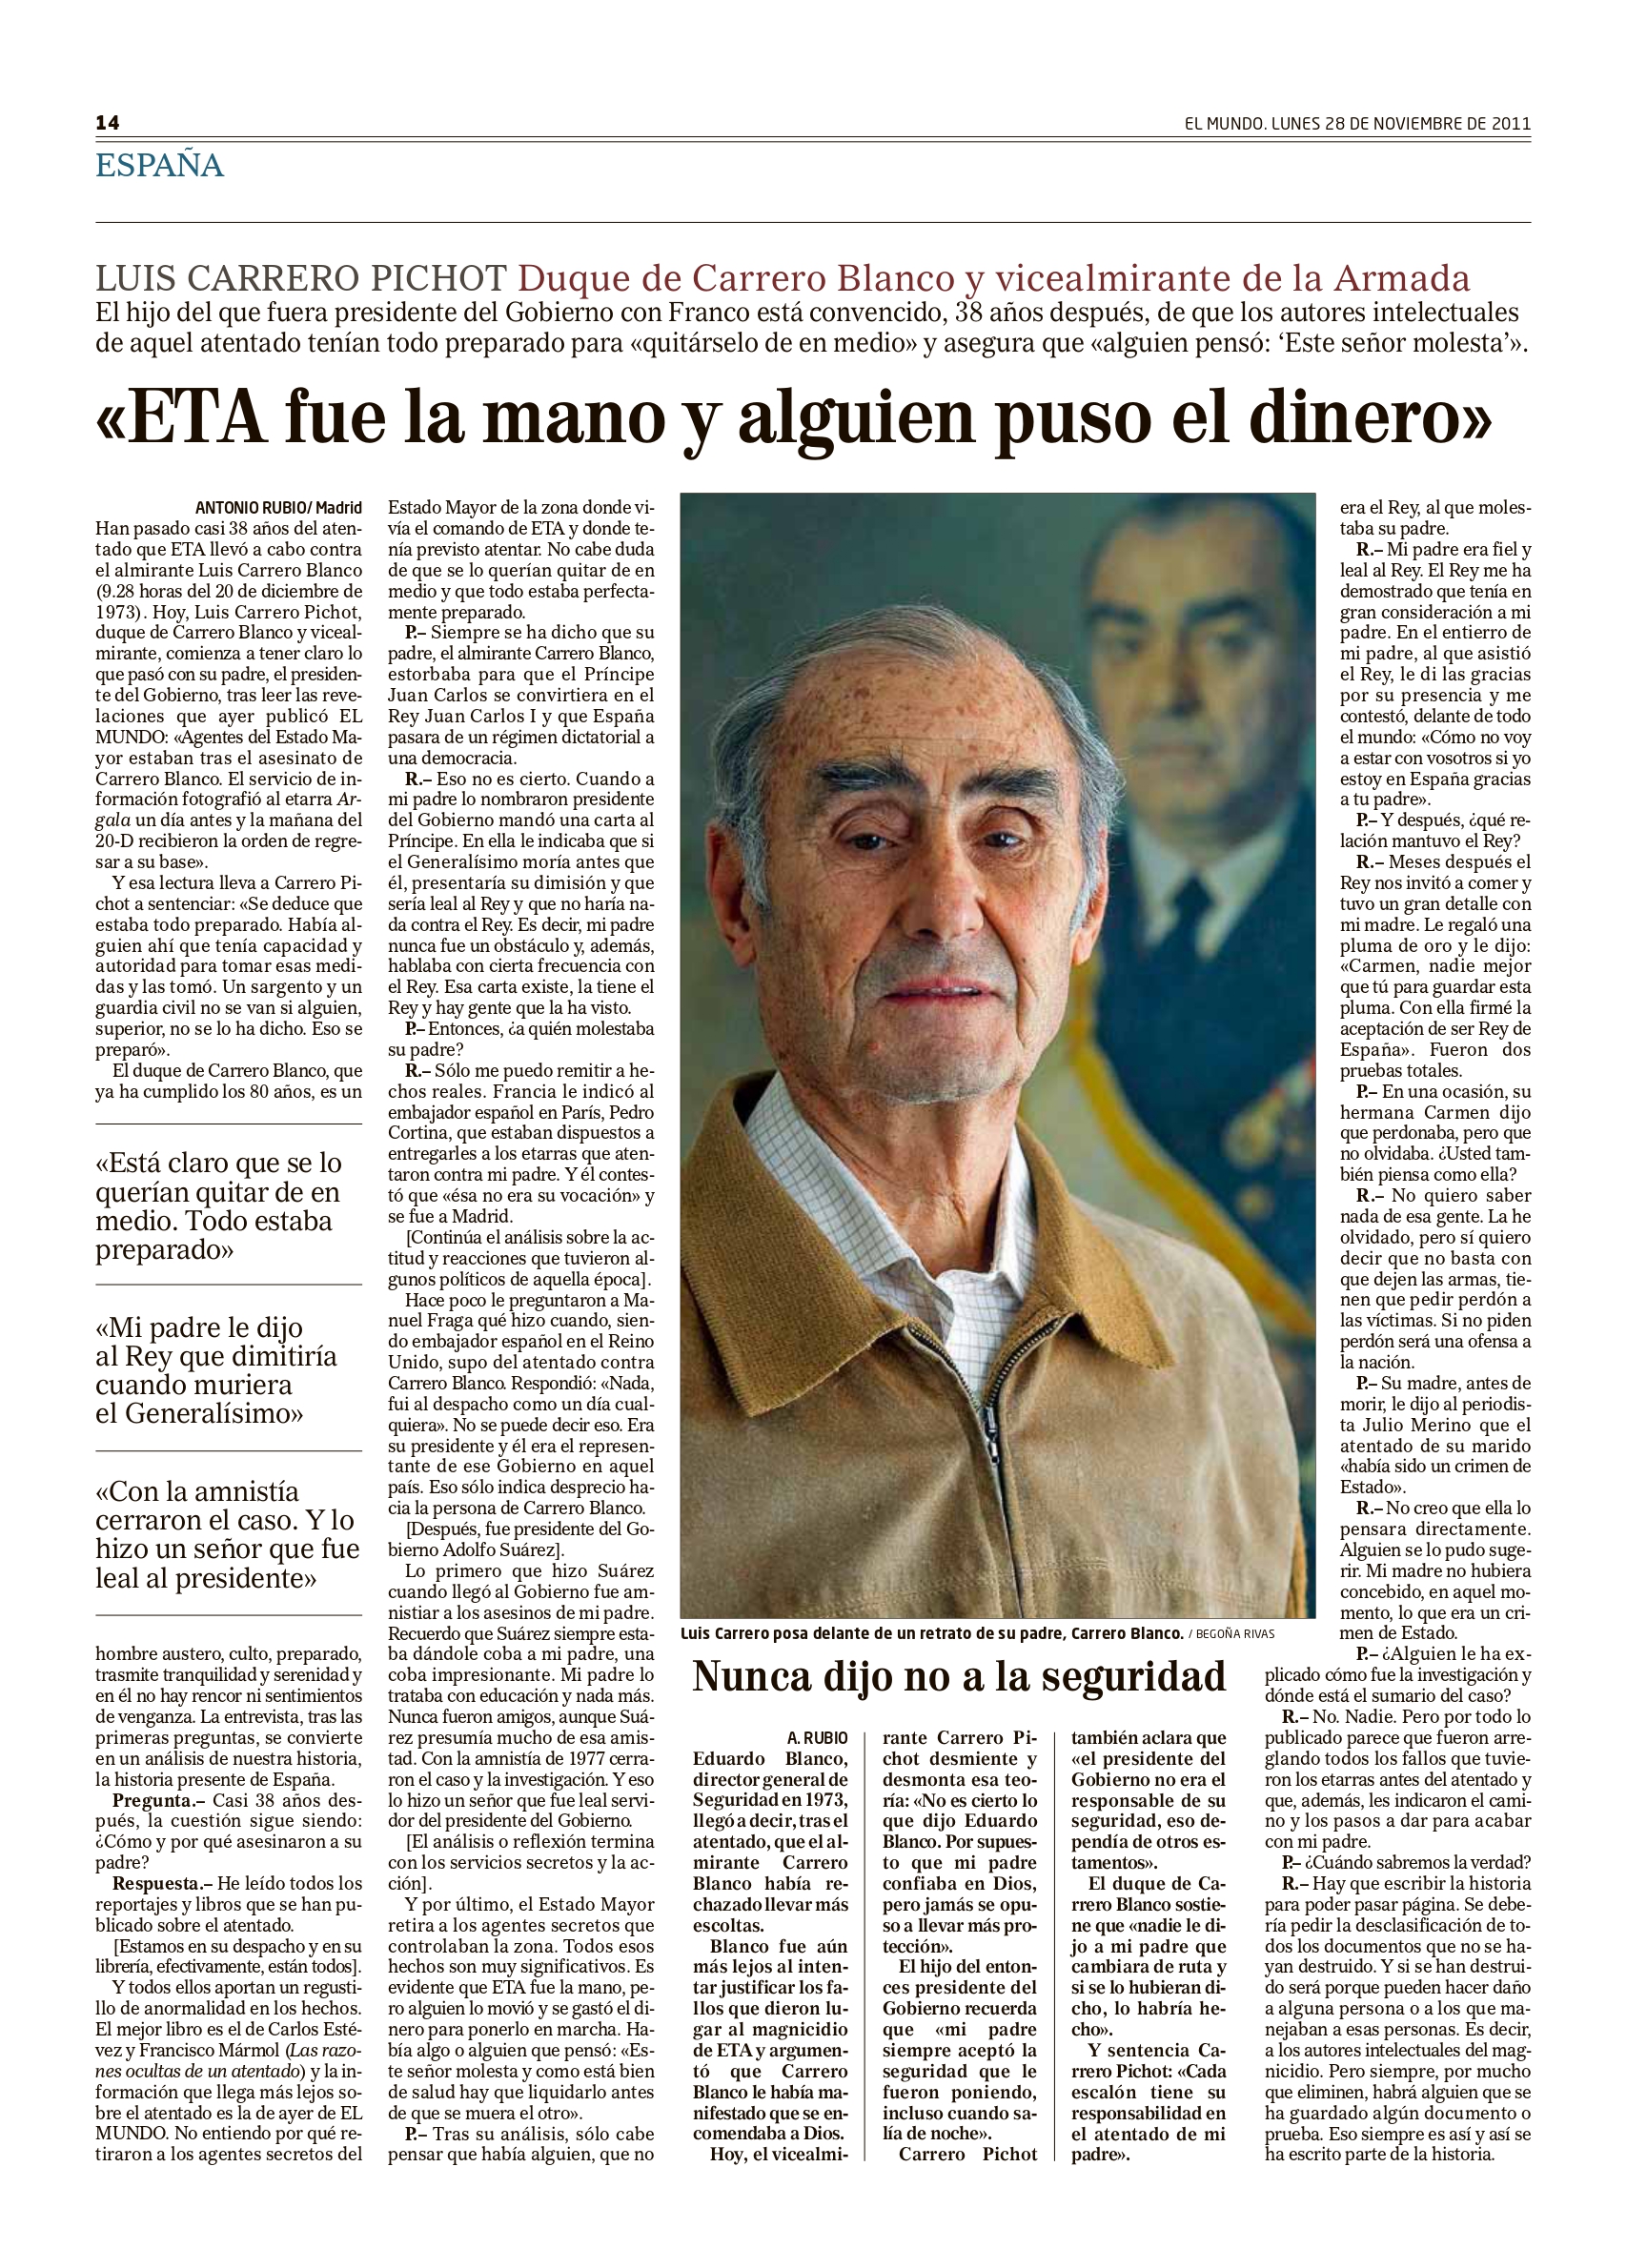 Entrevista al hijo de Carrero Blanco que El Mundo publicó el 28 de noviembre de 2011